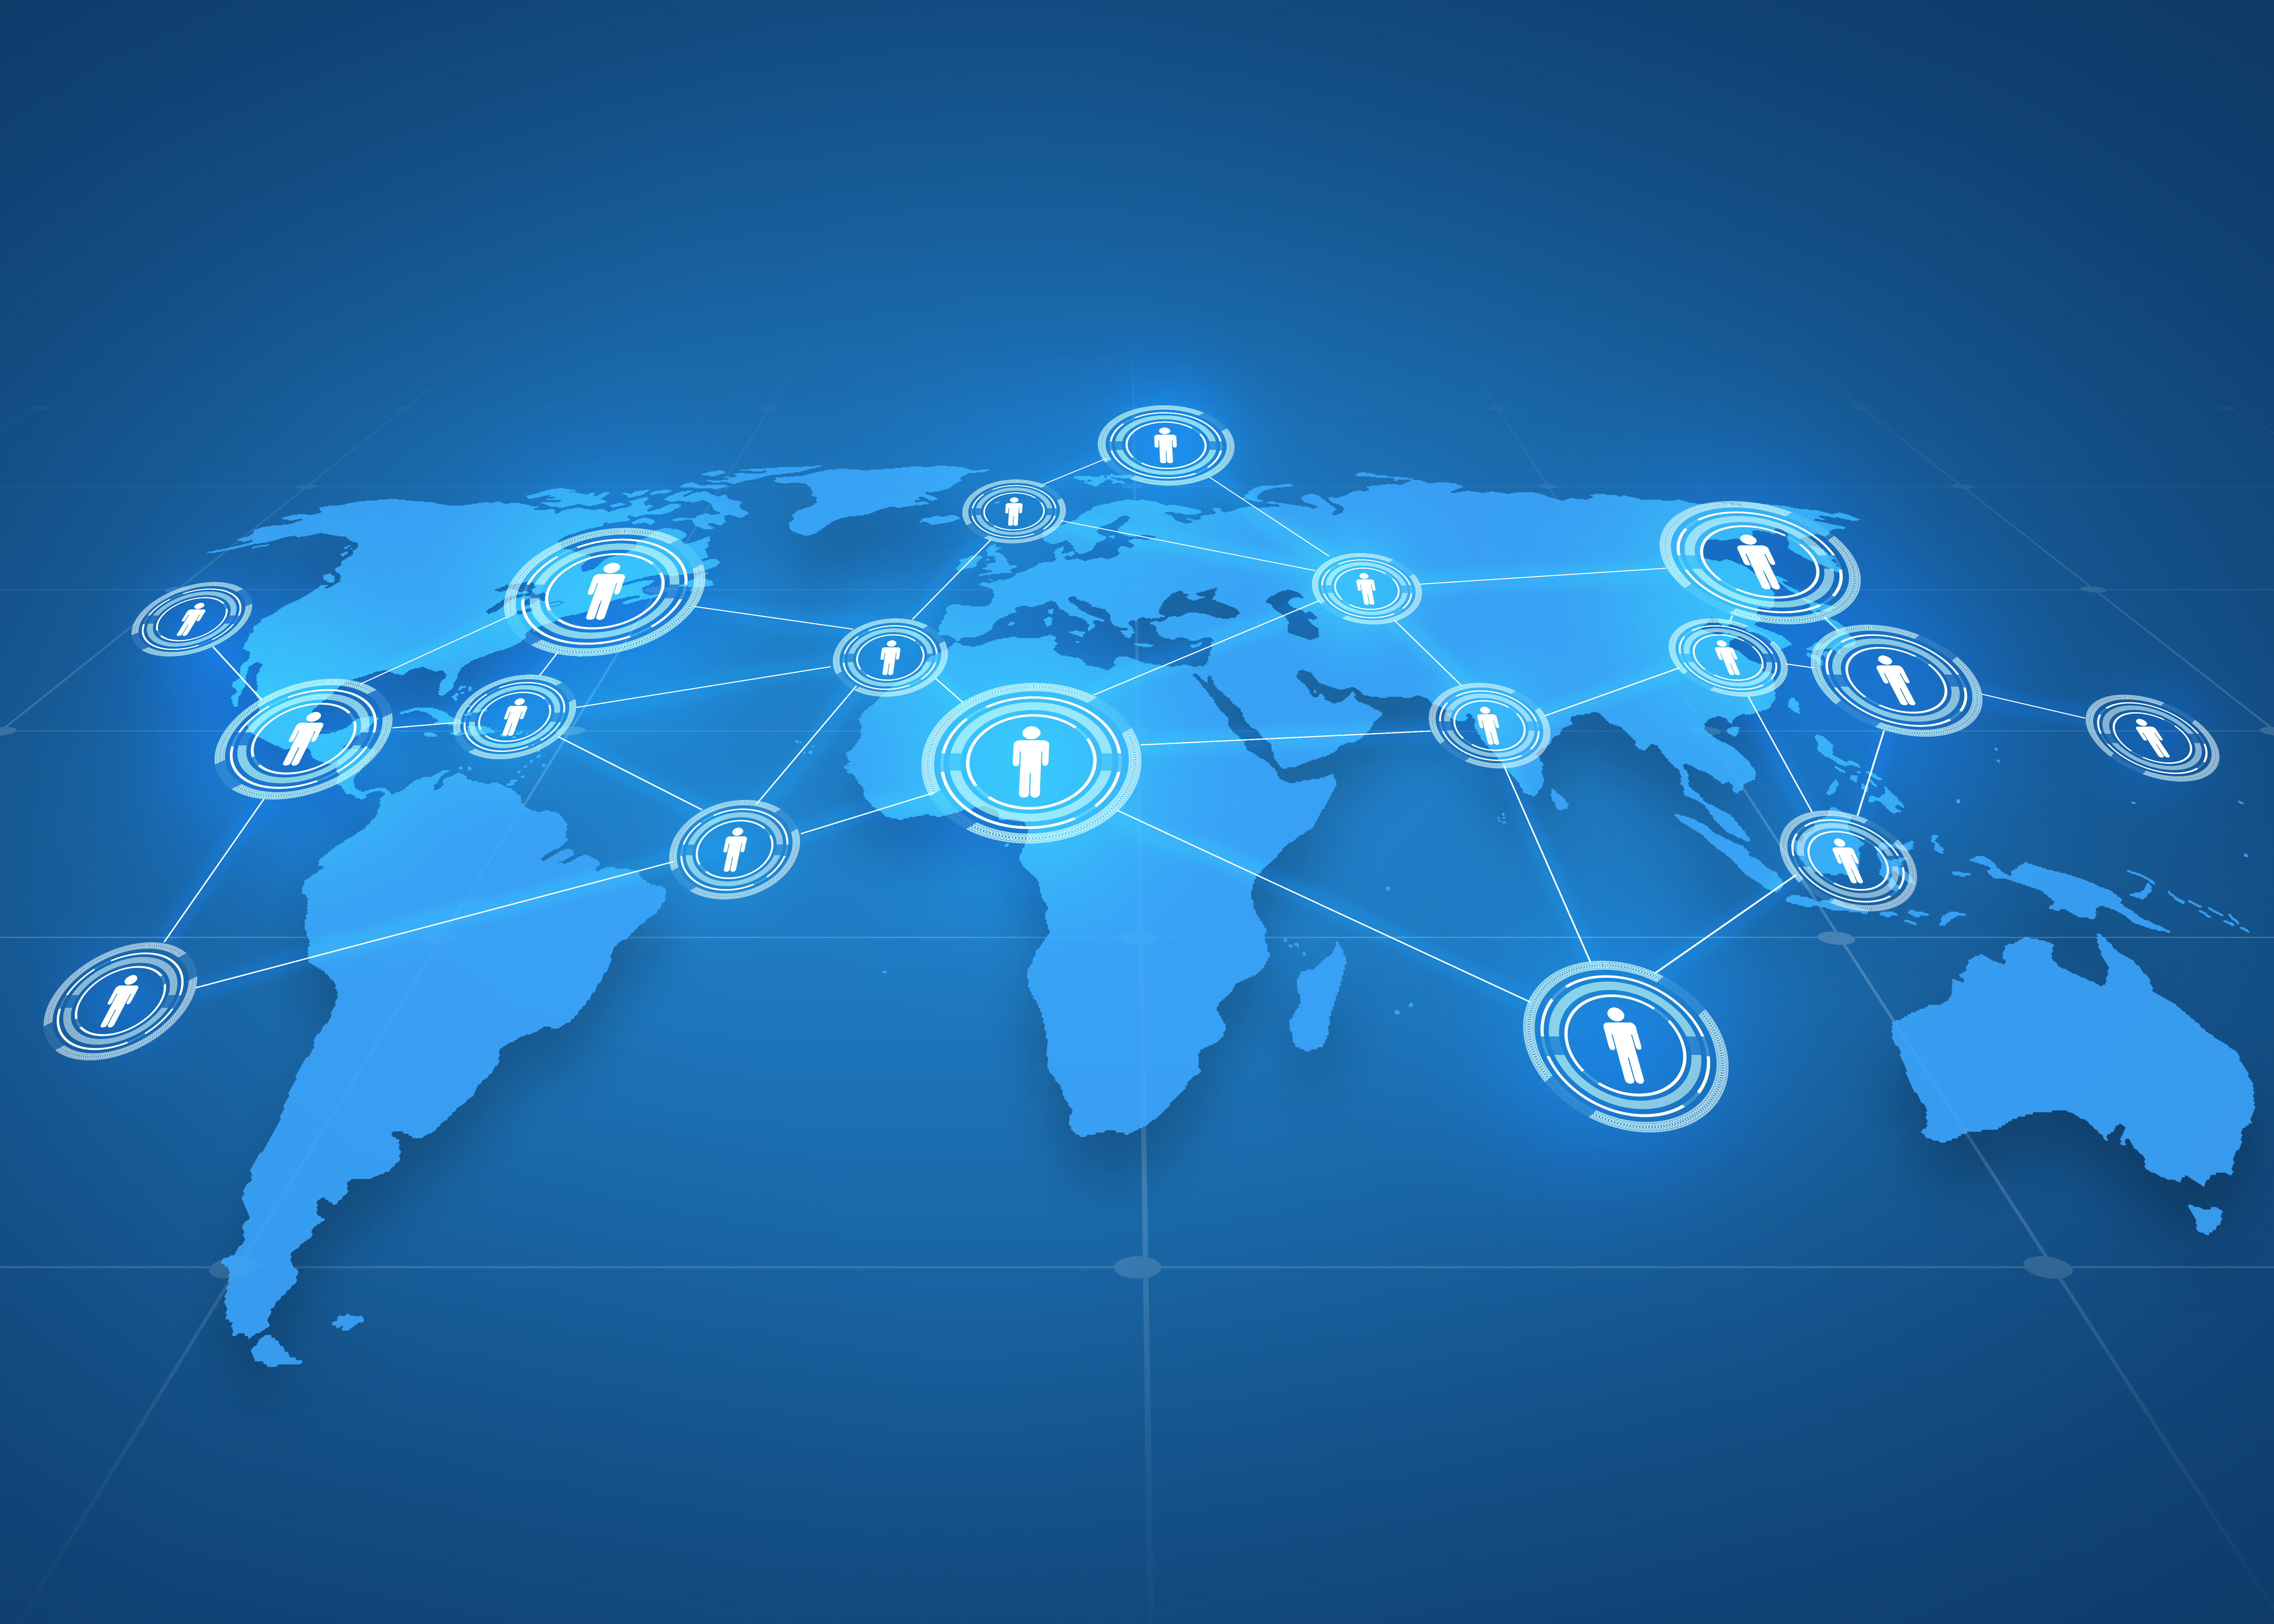 გლობალური ბიზნესი, სოციალური ქსელი, მასმედია და ტექნოლოგიების კონცეფცია - მსოფლიო რუქის პროექცია ხალხის ხატებით ლურჯ ფონზე